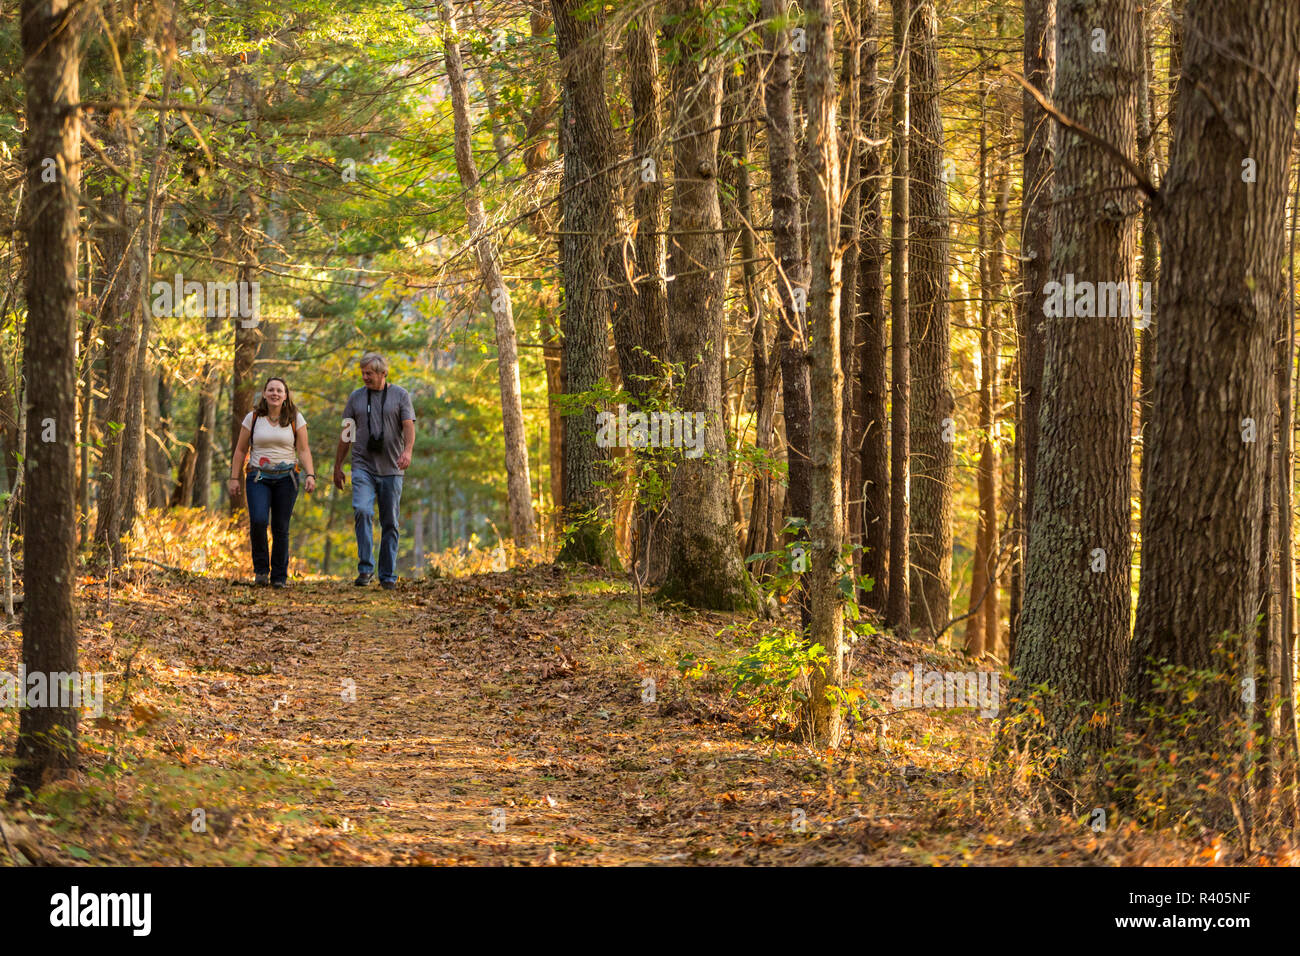 Les randonneurs sur un sentier forestier dans la région de Marshfield, Massachusetts. Hoyt-Hall préserver. (MR) Banque D'Images